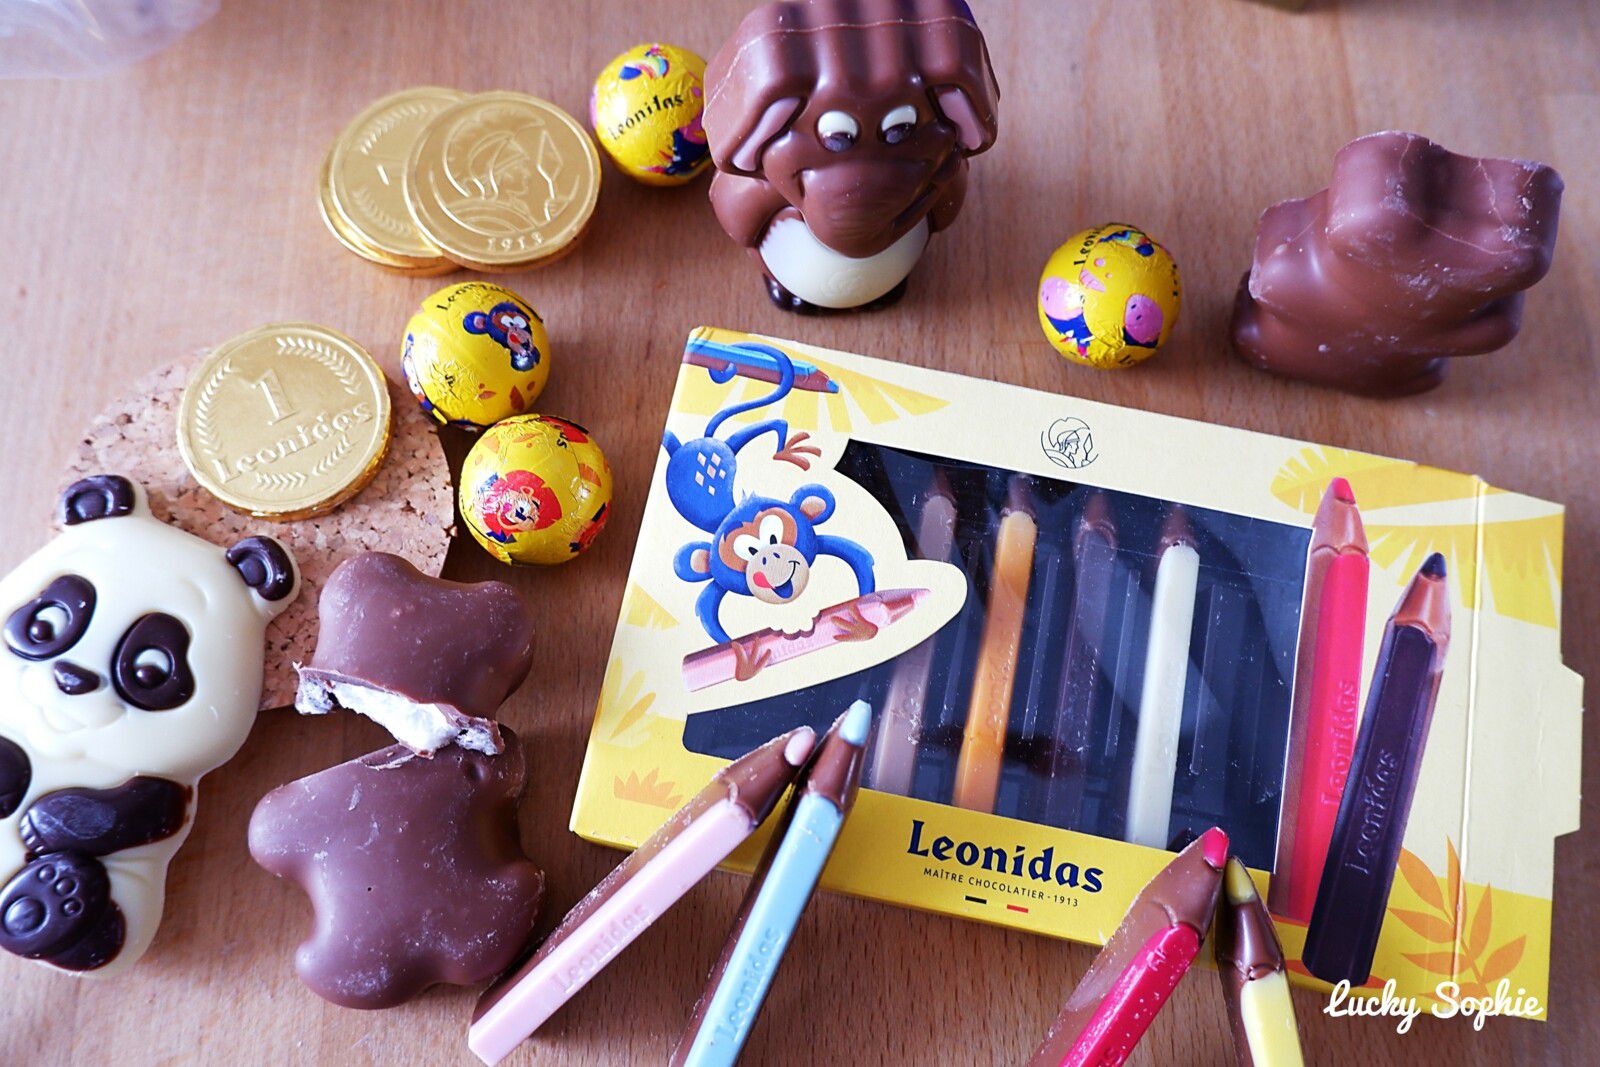 Les chocolats Leonidas pour les enfants ! - Lucky Sophie blog famille voyage